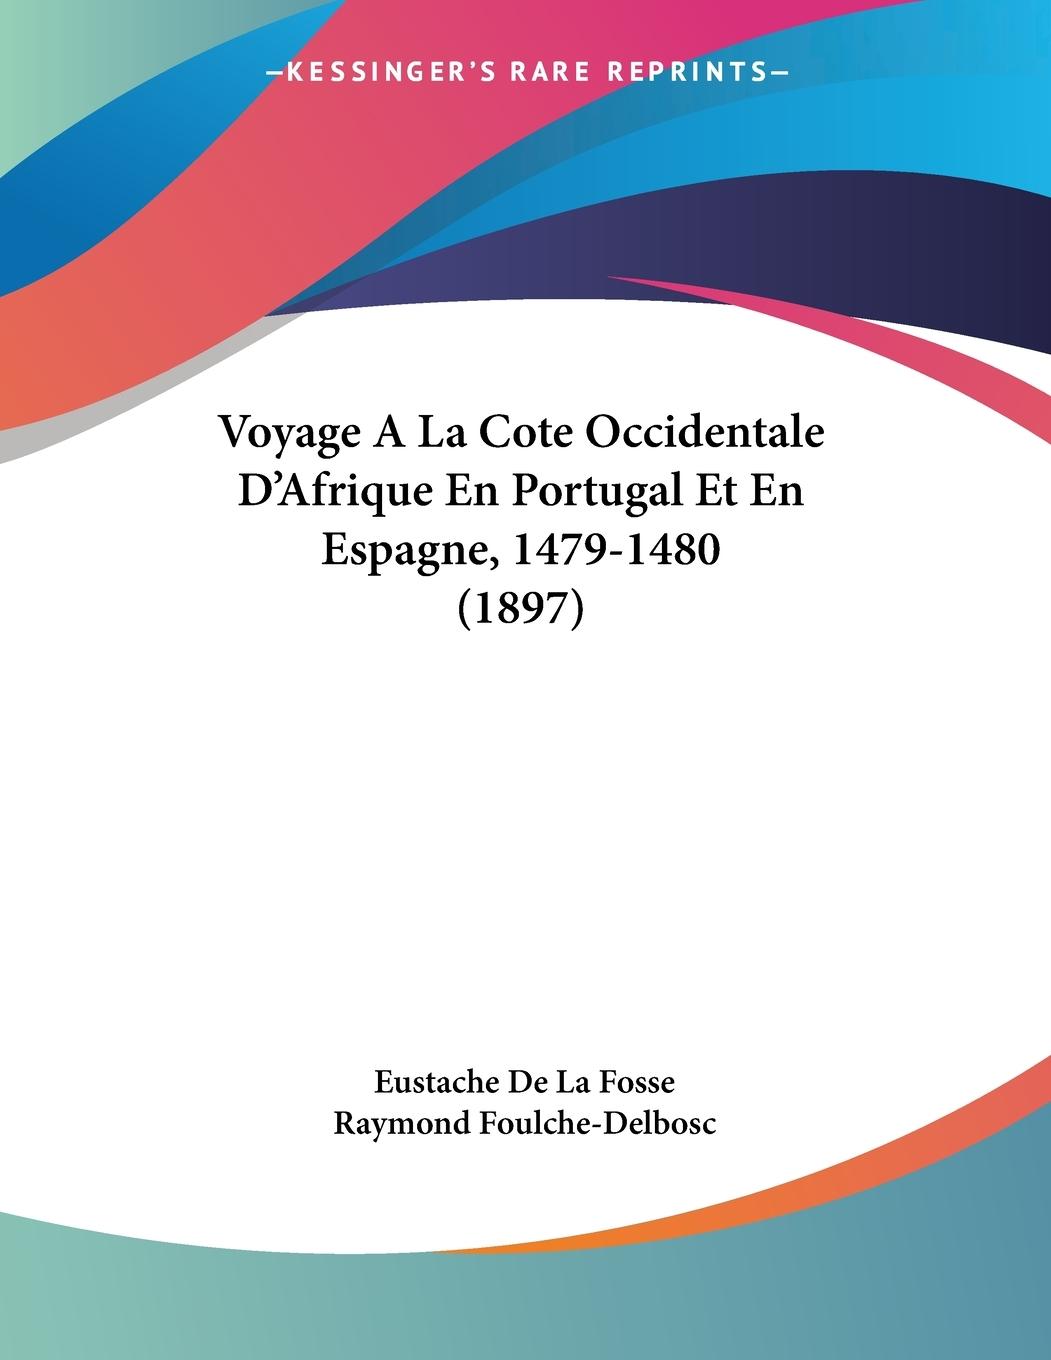 Voyage A La Cote Occidentale D Afrique En Portugal Et En Espagne, 1479-1480 (1897) - De La Fosse, Eustache Foulche-Delbosc, Raymond